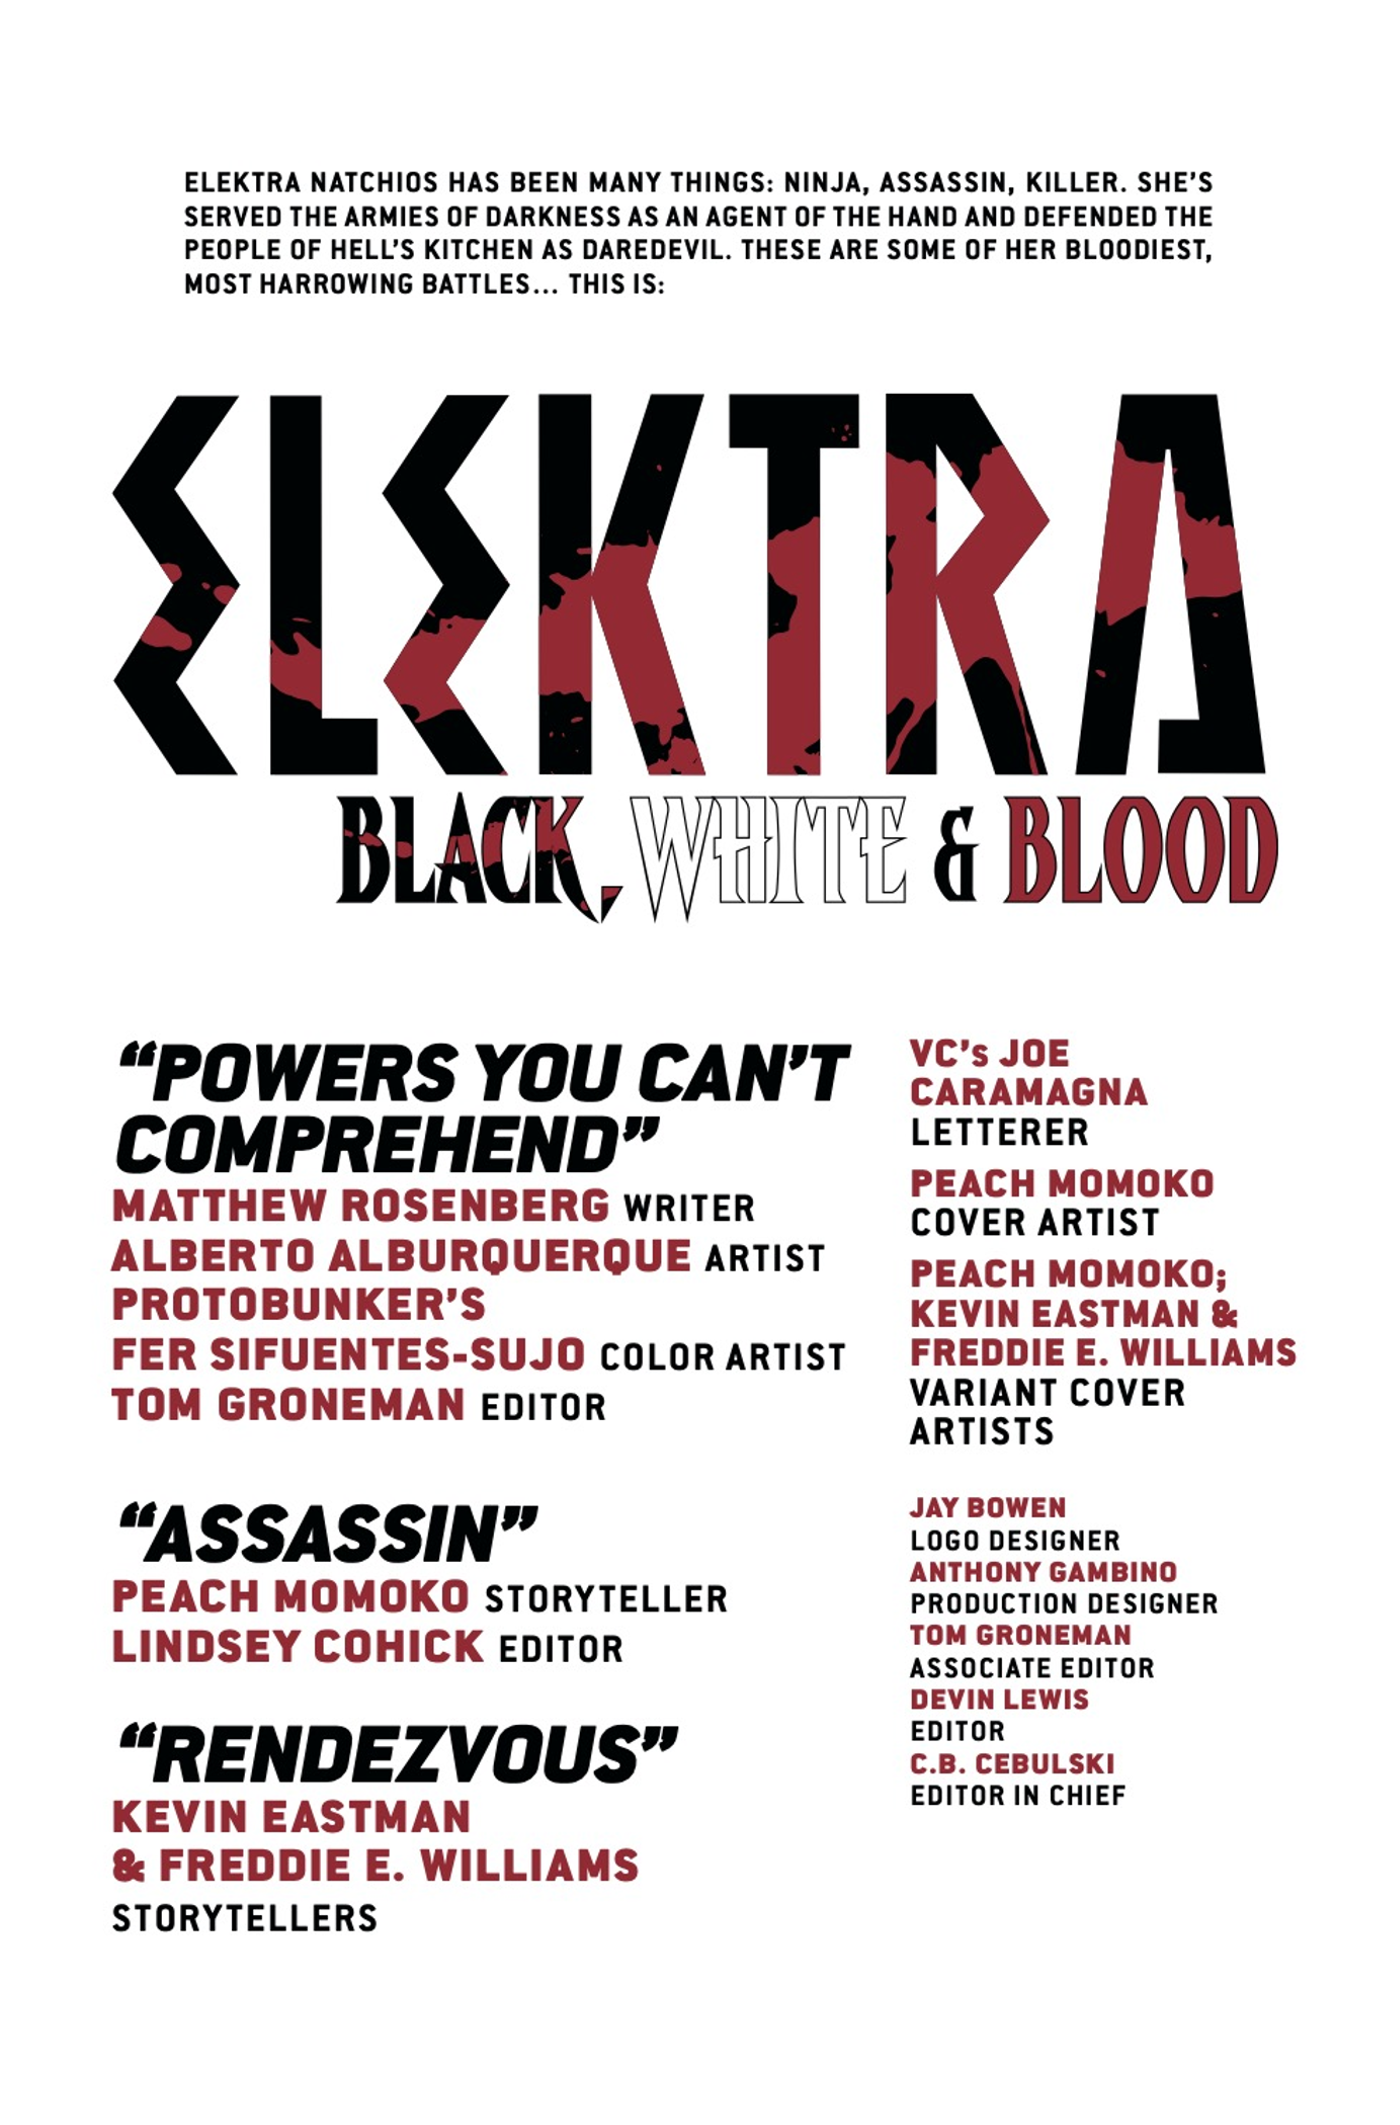 Elektra black white blood #4 credits comic